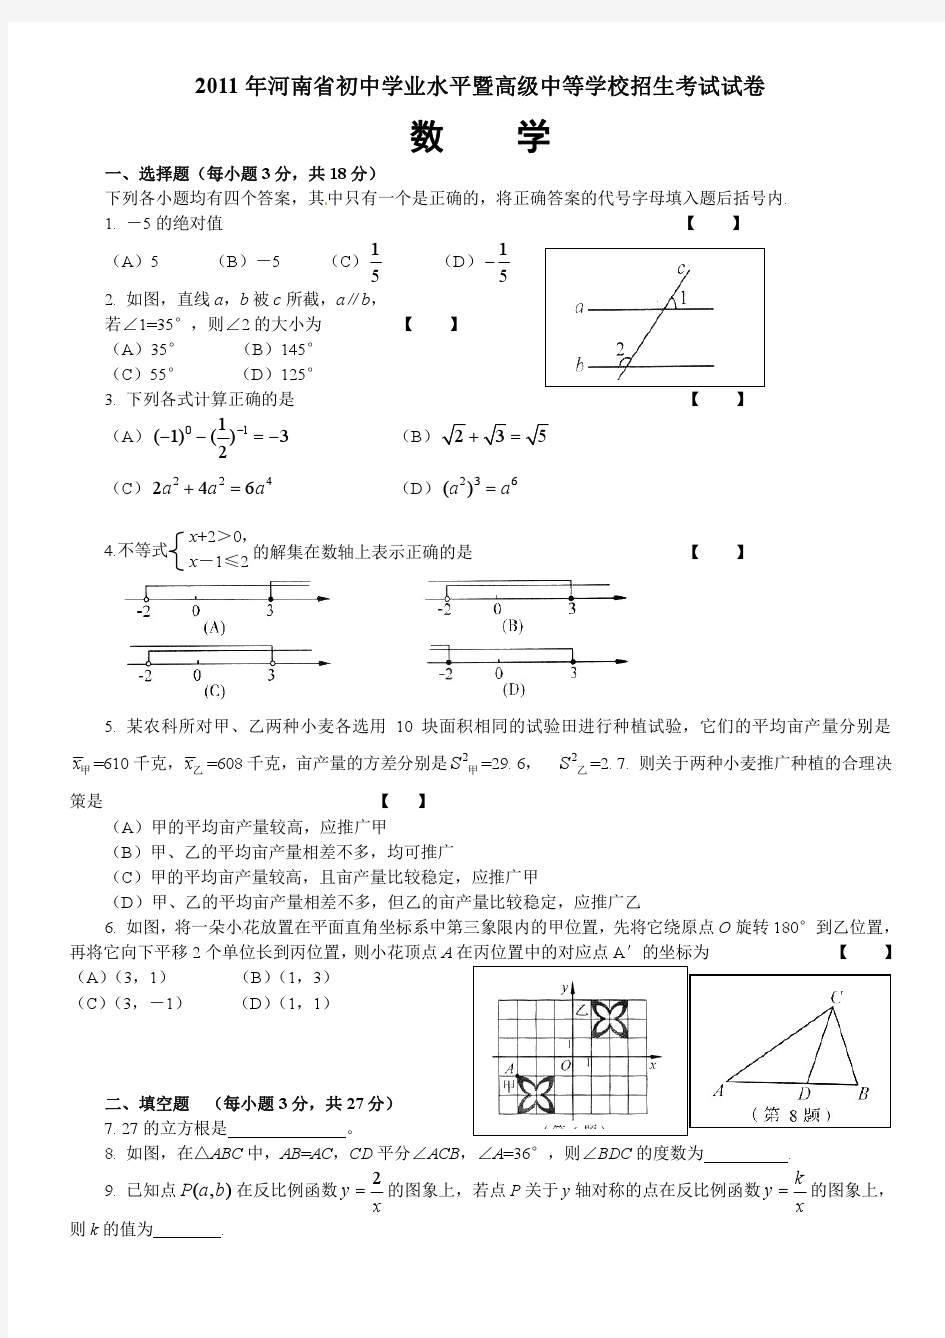 2011年河南省中招考试数学试卷及答案(含评分标准)